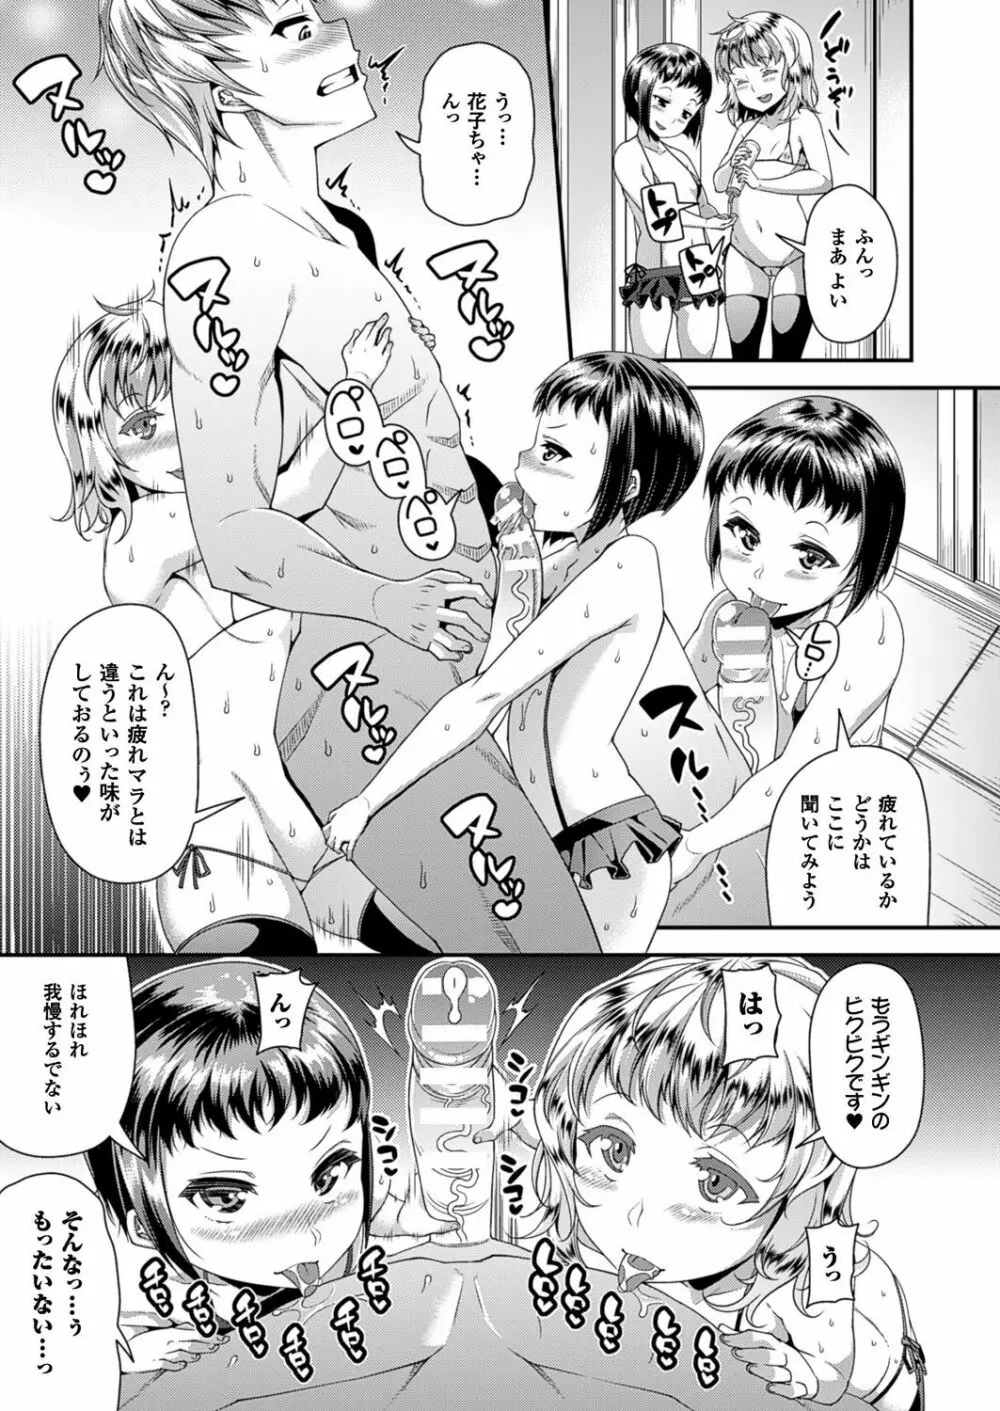 Toshi Densetsu Series Ch. 01-03 46ページ